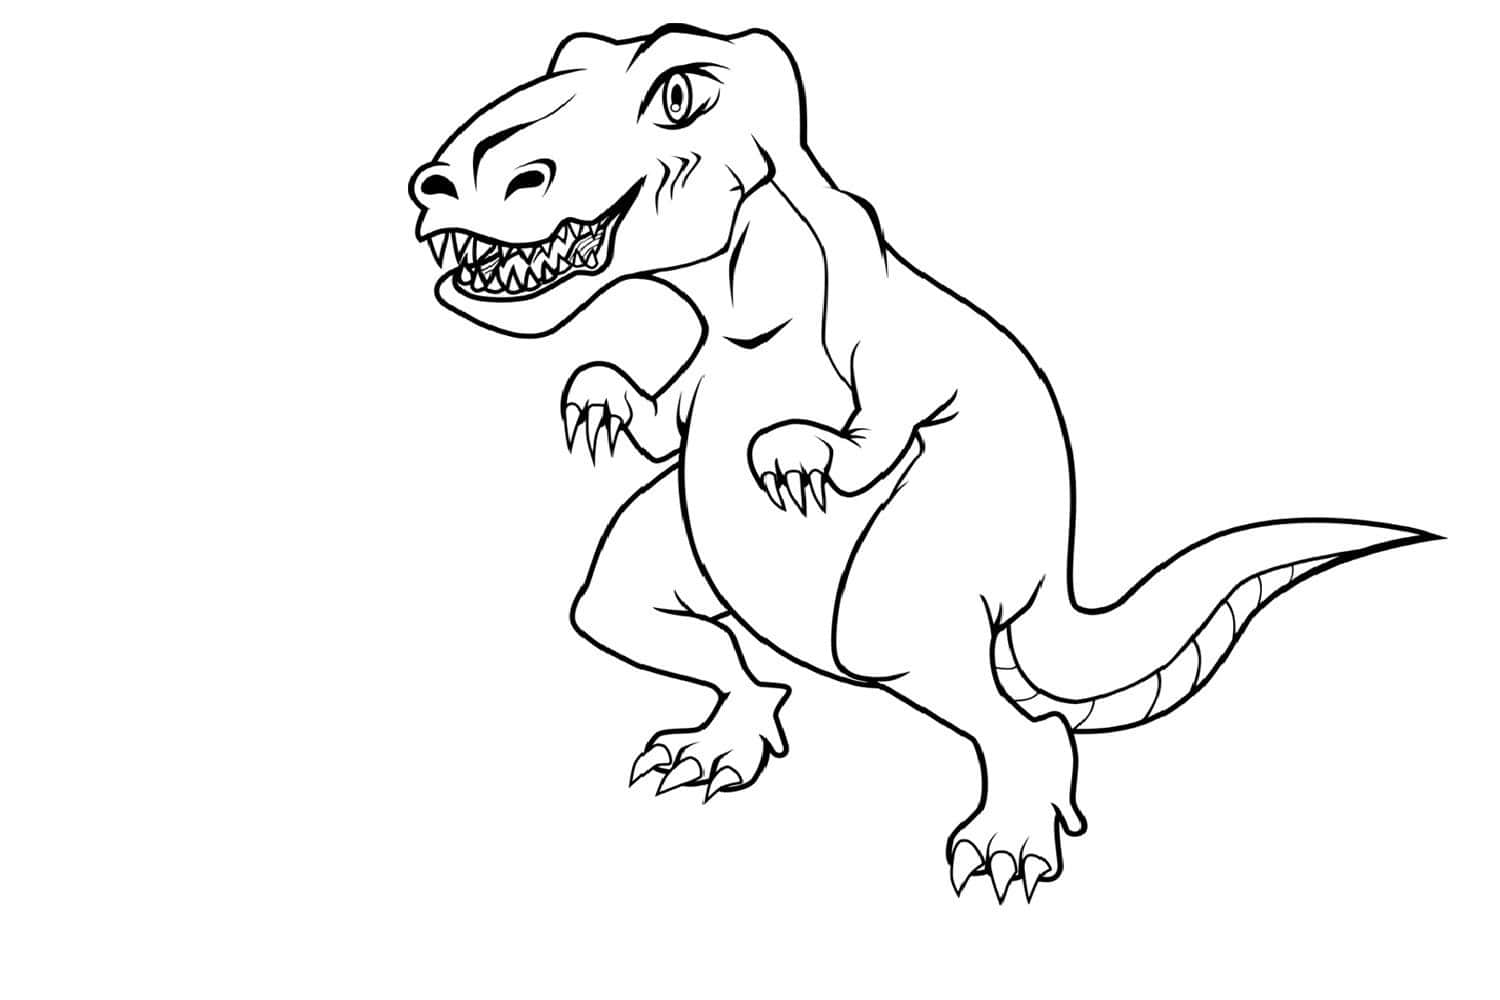 Unapagina Di Colorazione Di Un T-rex